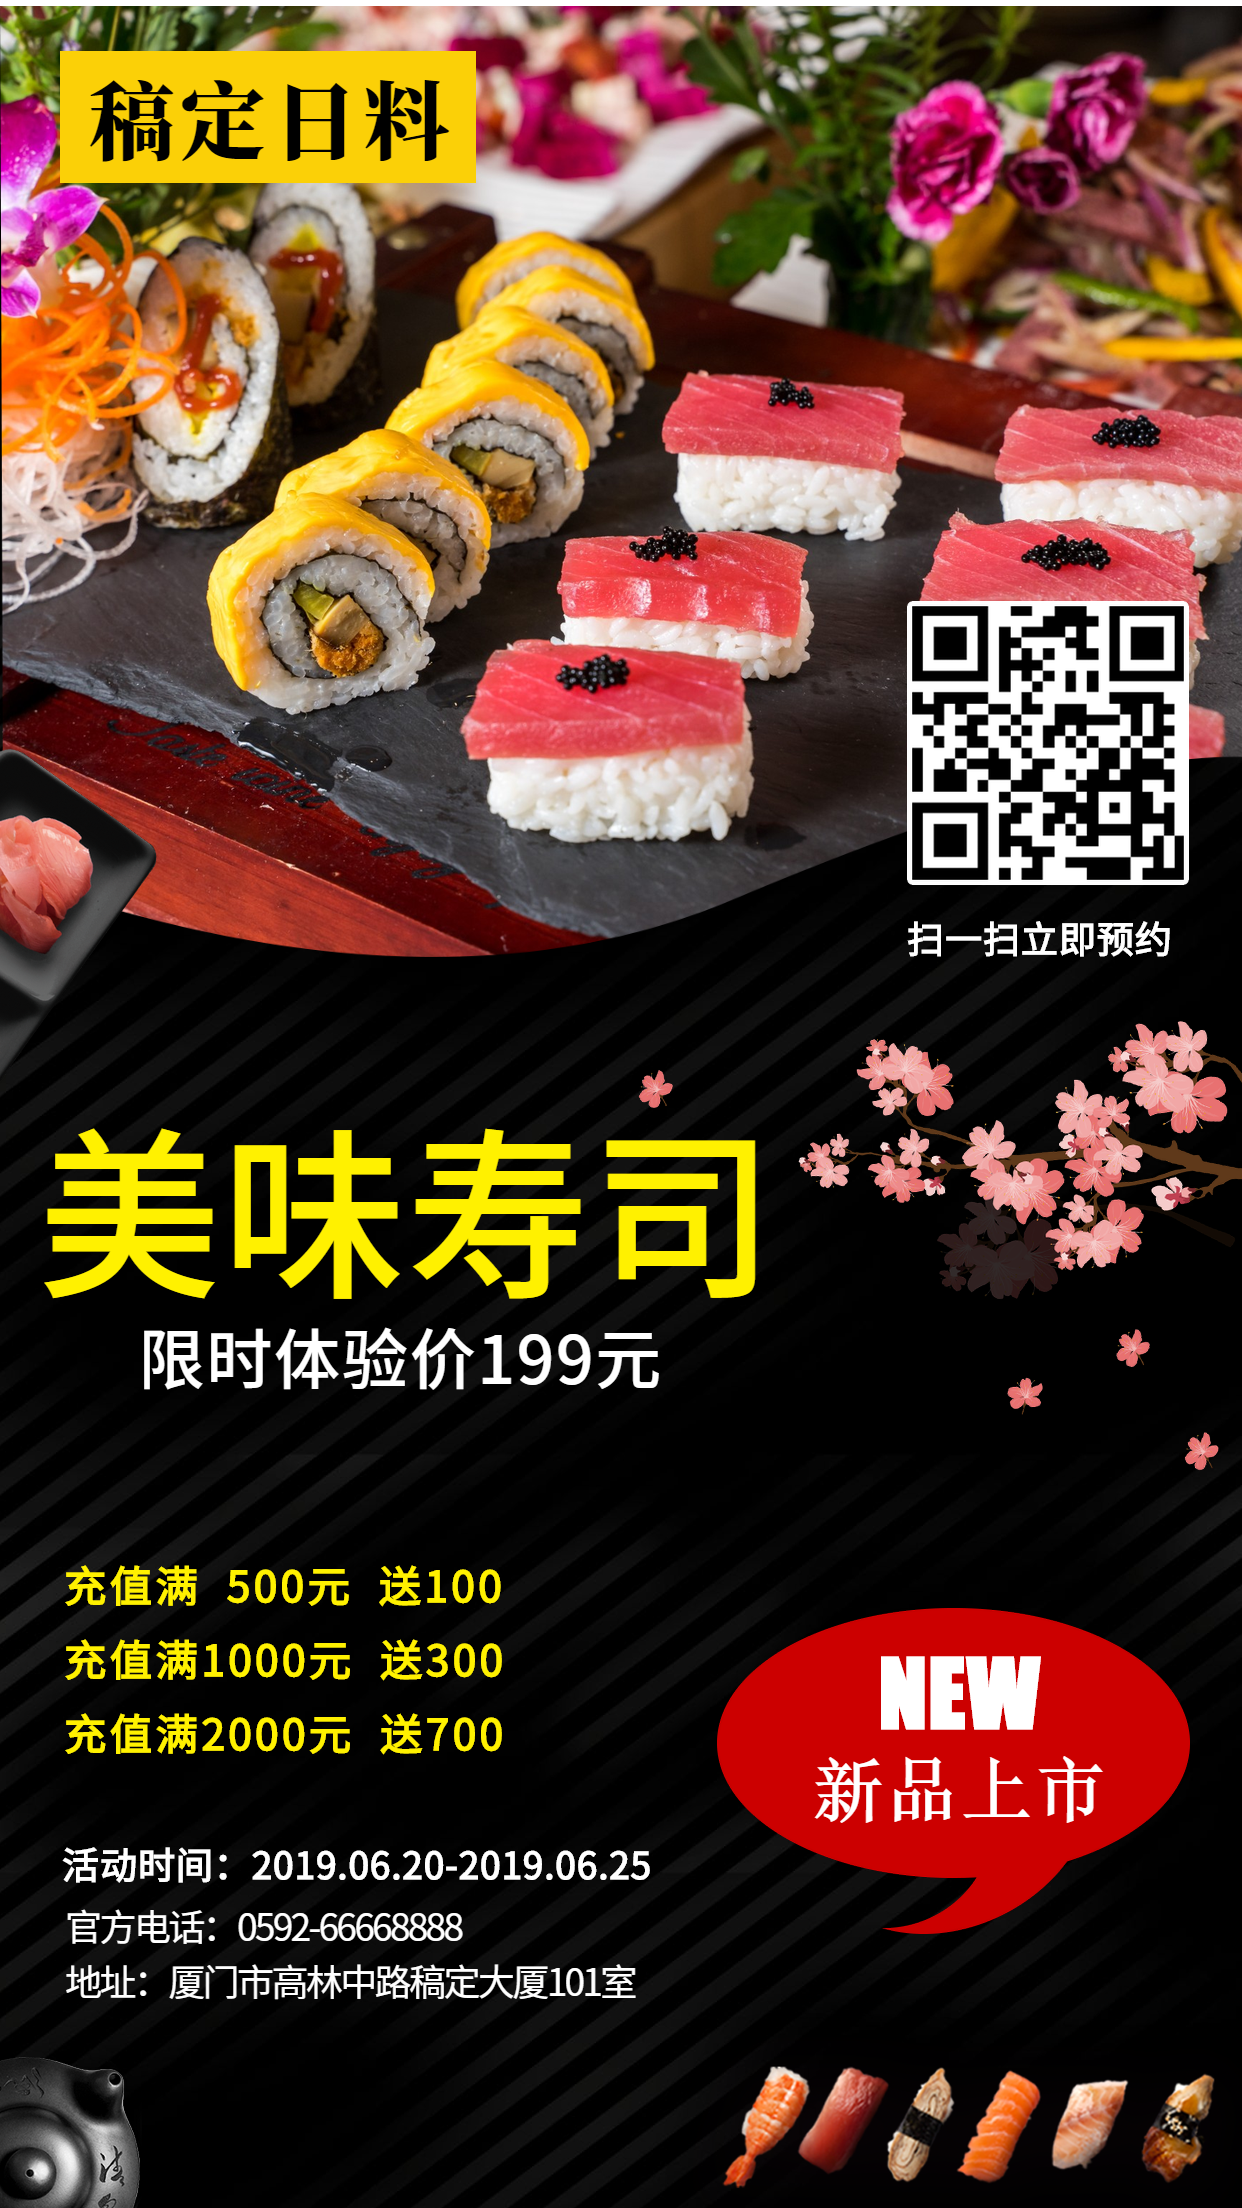 日料寿司新品上市手机海报预览效果